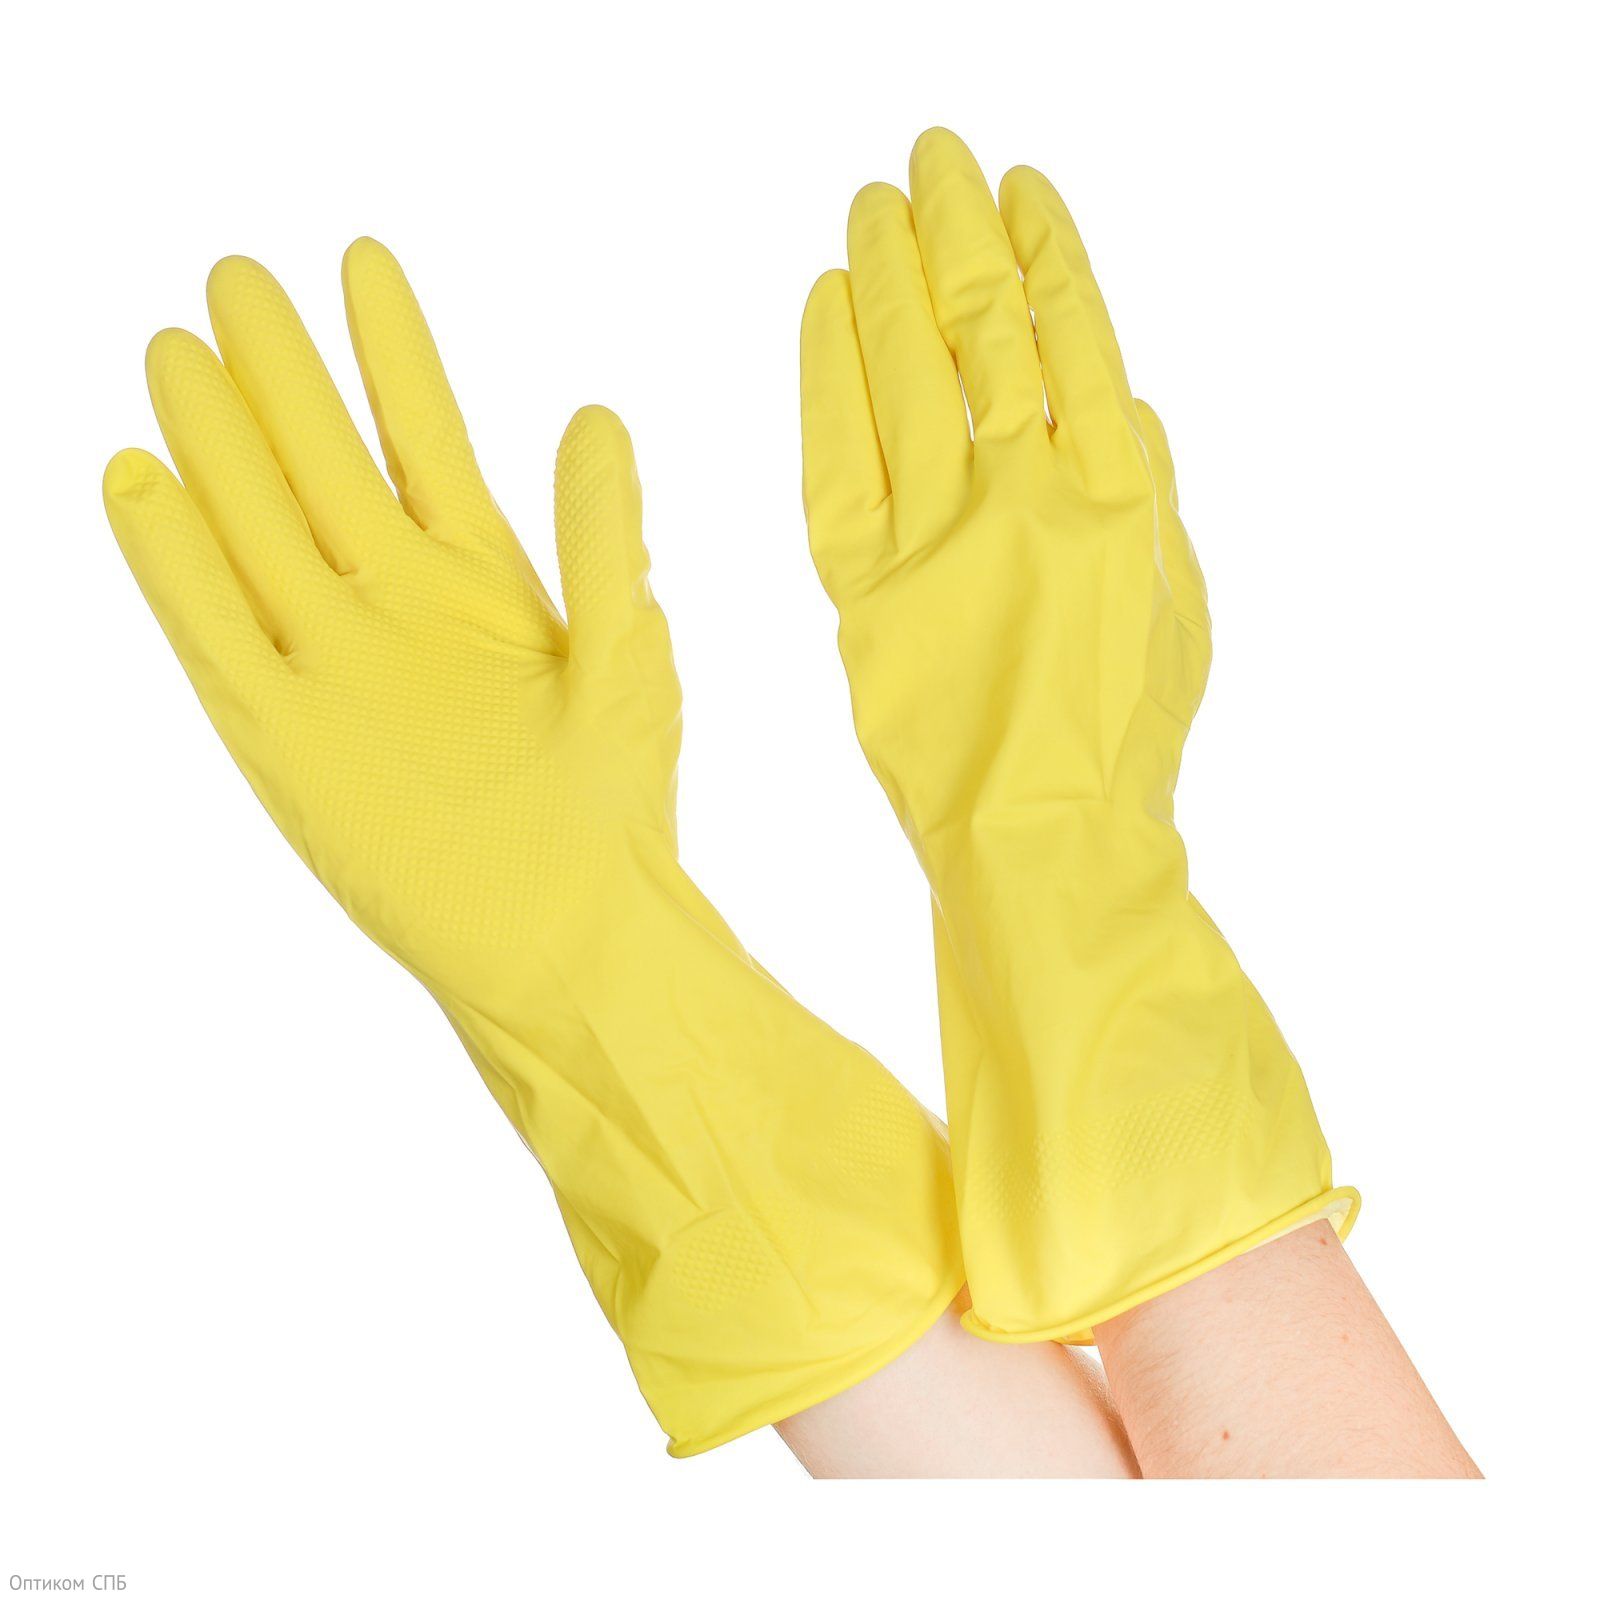 Перчатки резиновые хозяйственные Optiline с валиком. Предназначены для бытового использования во время уборки, стирки, мытья автомобиля, садовых работ. Размер L. Цвет желтый.